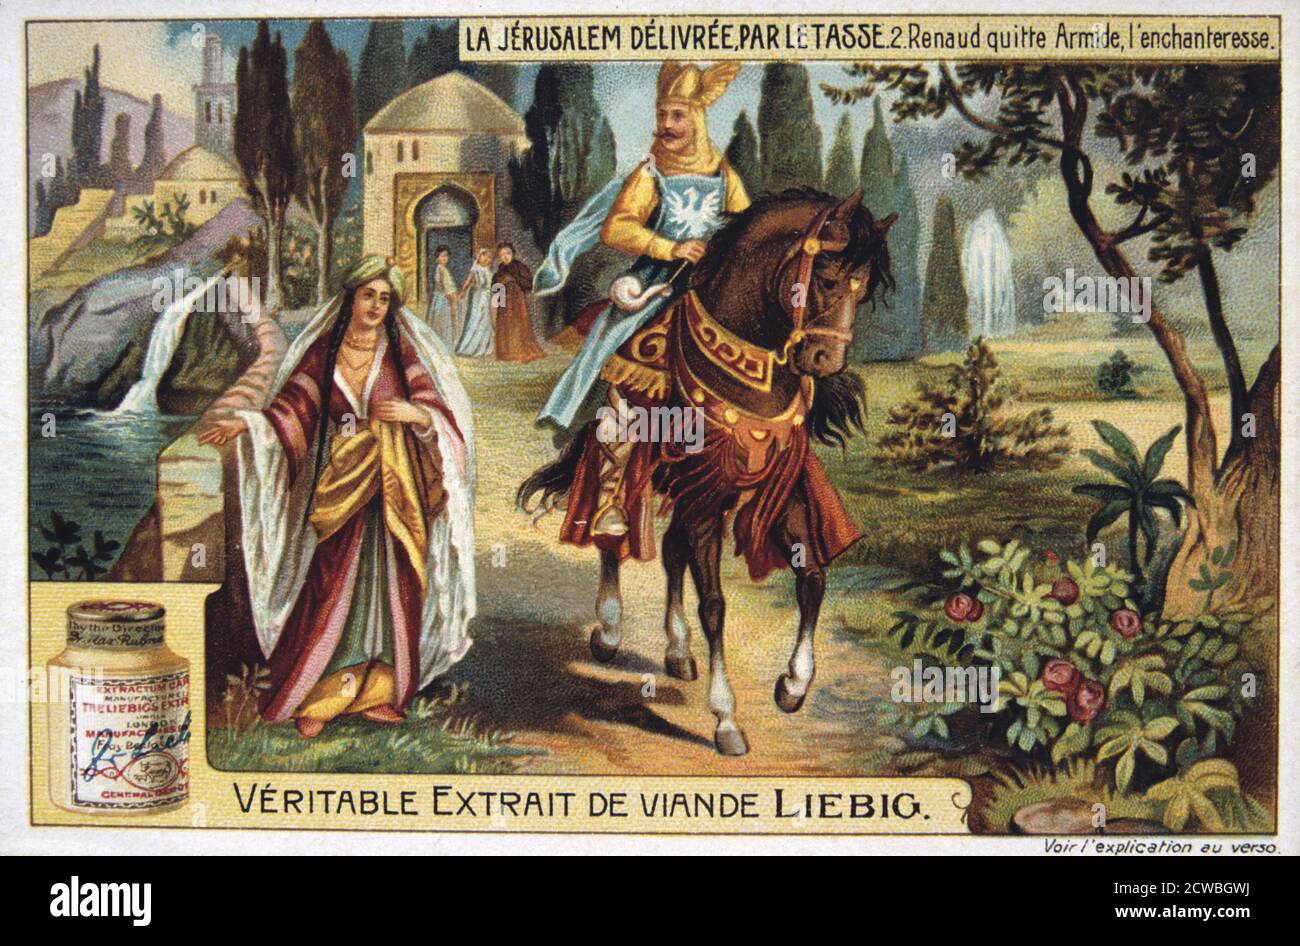 La Jerusalem deliveree par le Tasse, Renaud leaves Armide, the enchantress. 19th Century. Colour Lithograph. Private collection. Stock Photo